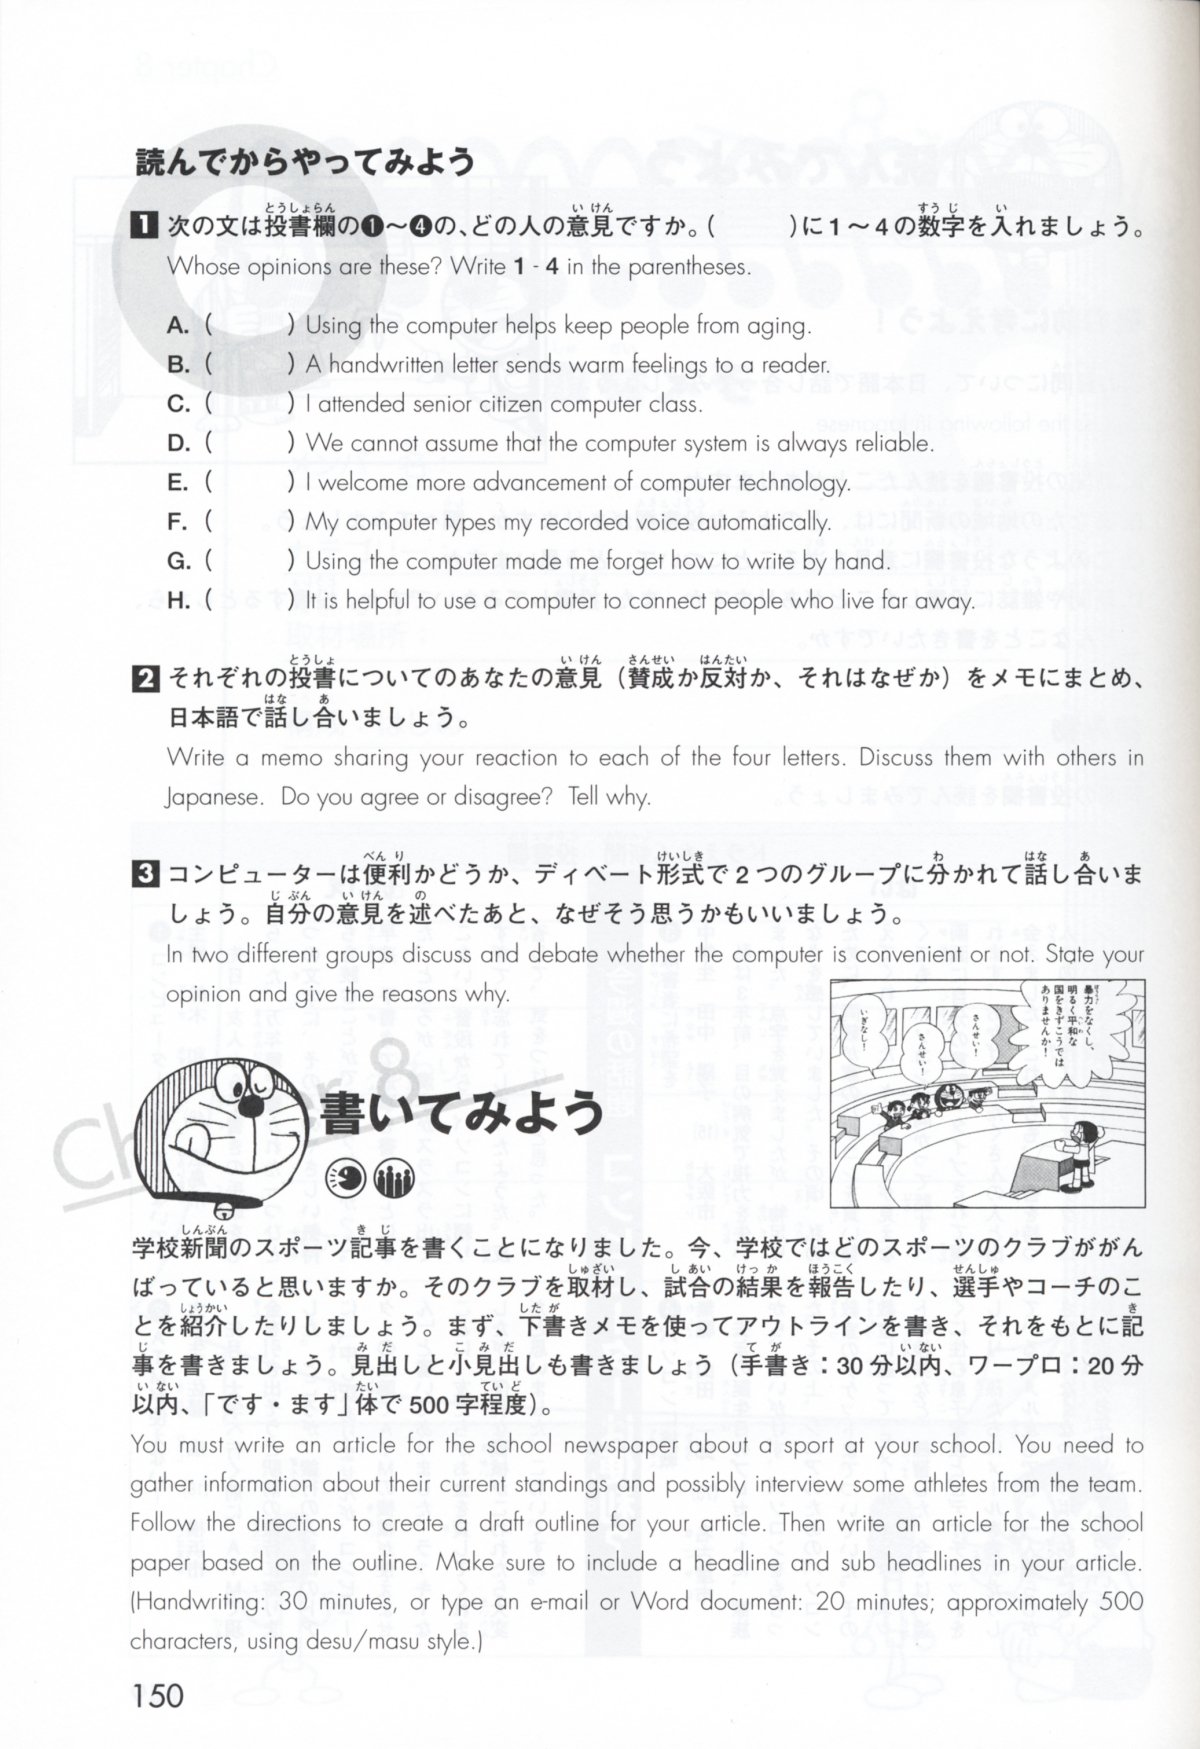 国際交流基金 日本語教育通信 本ばこ ドラえもんのどこでも日本語